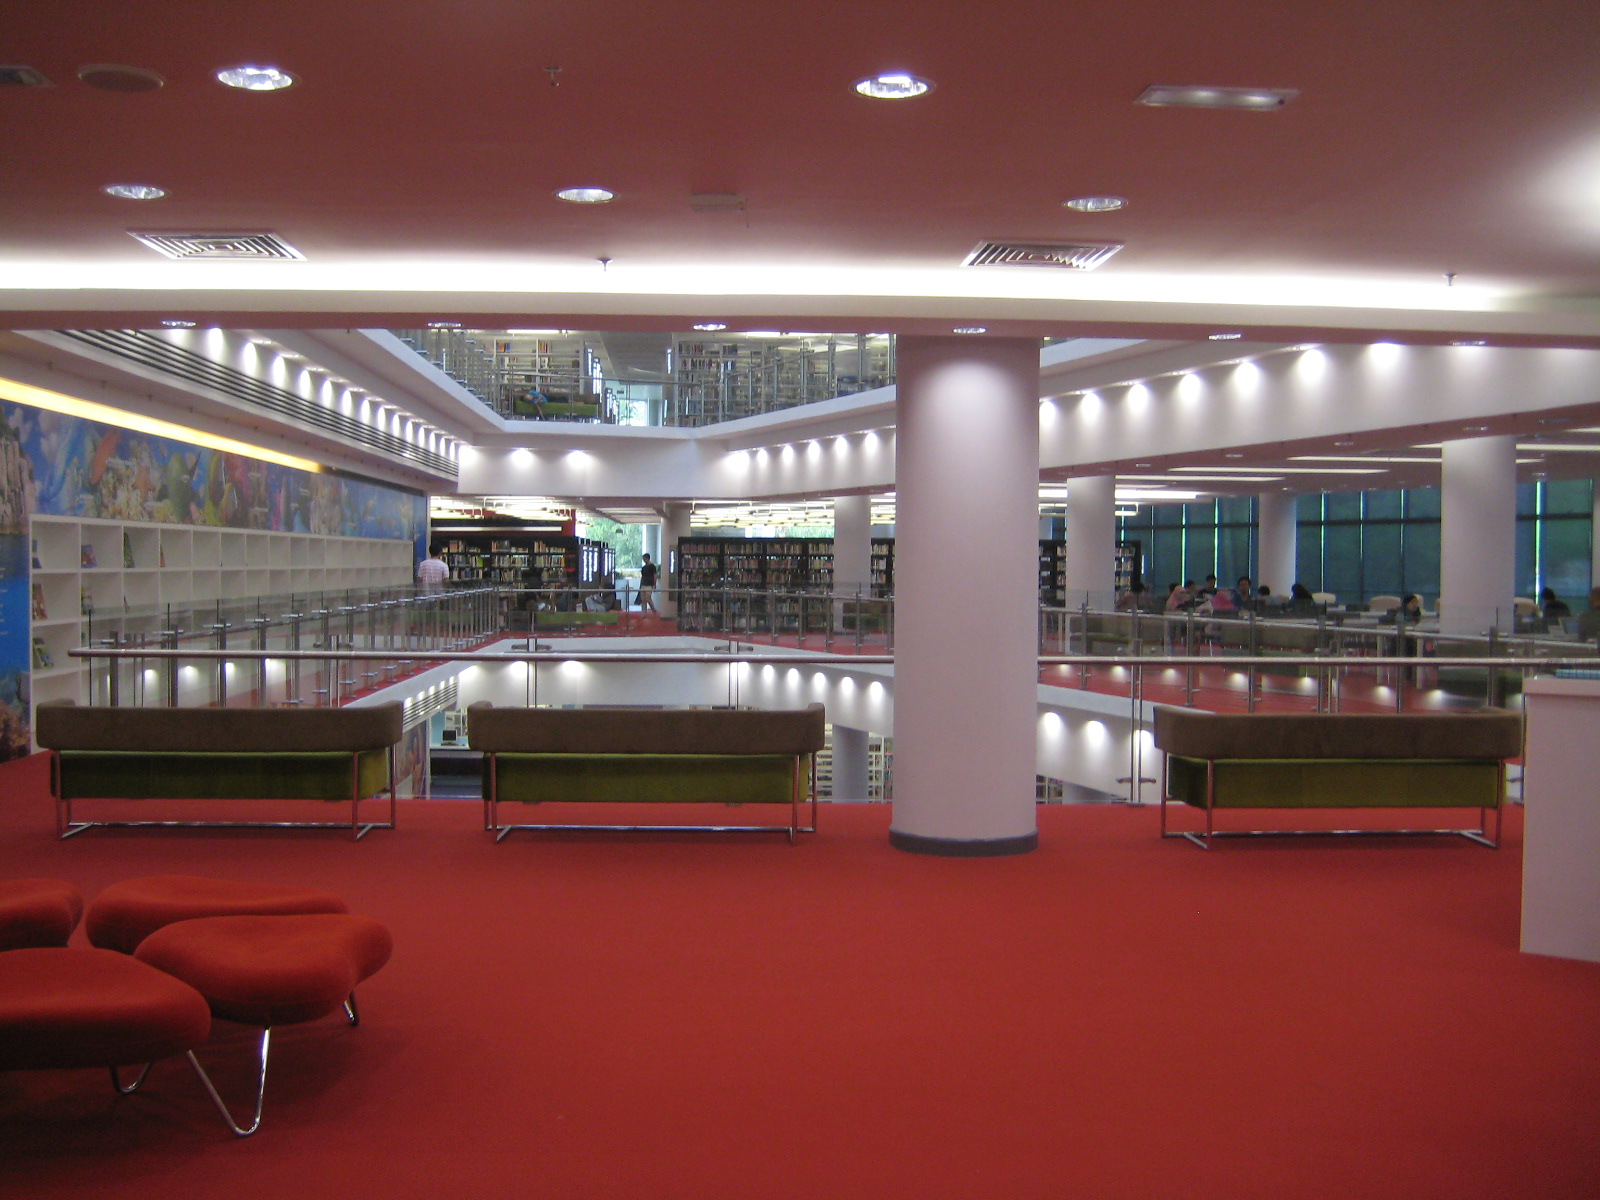 Catitan & Gambar Kunjungan ke Perpustakaan Baru Shah Alam 